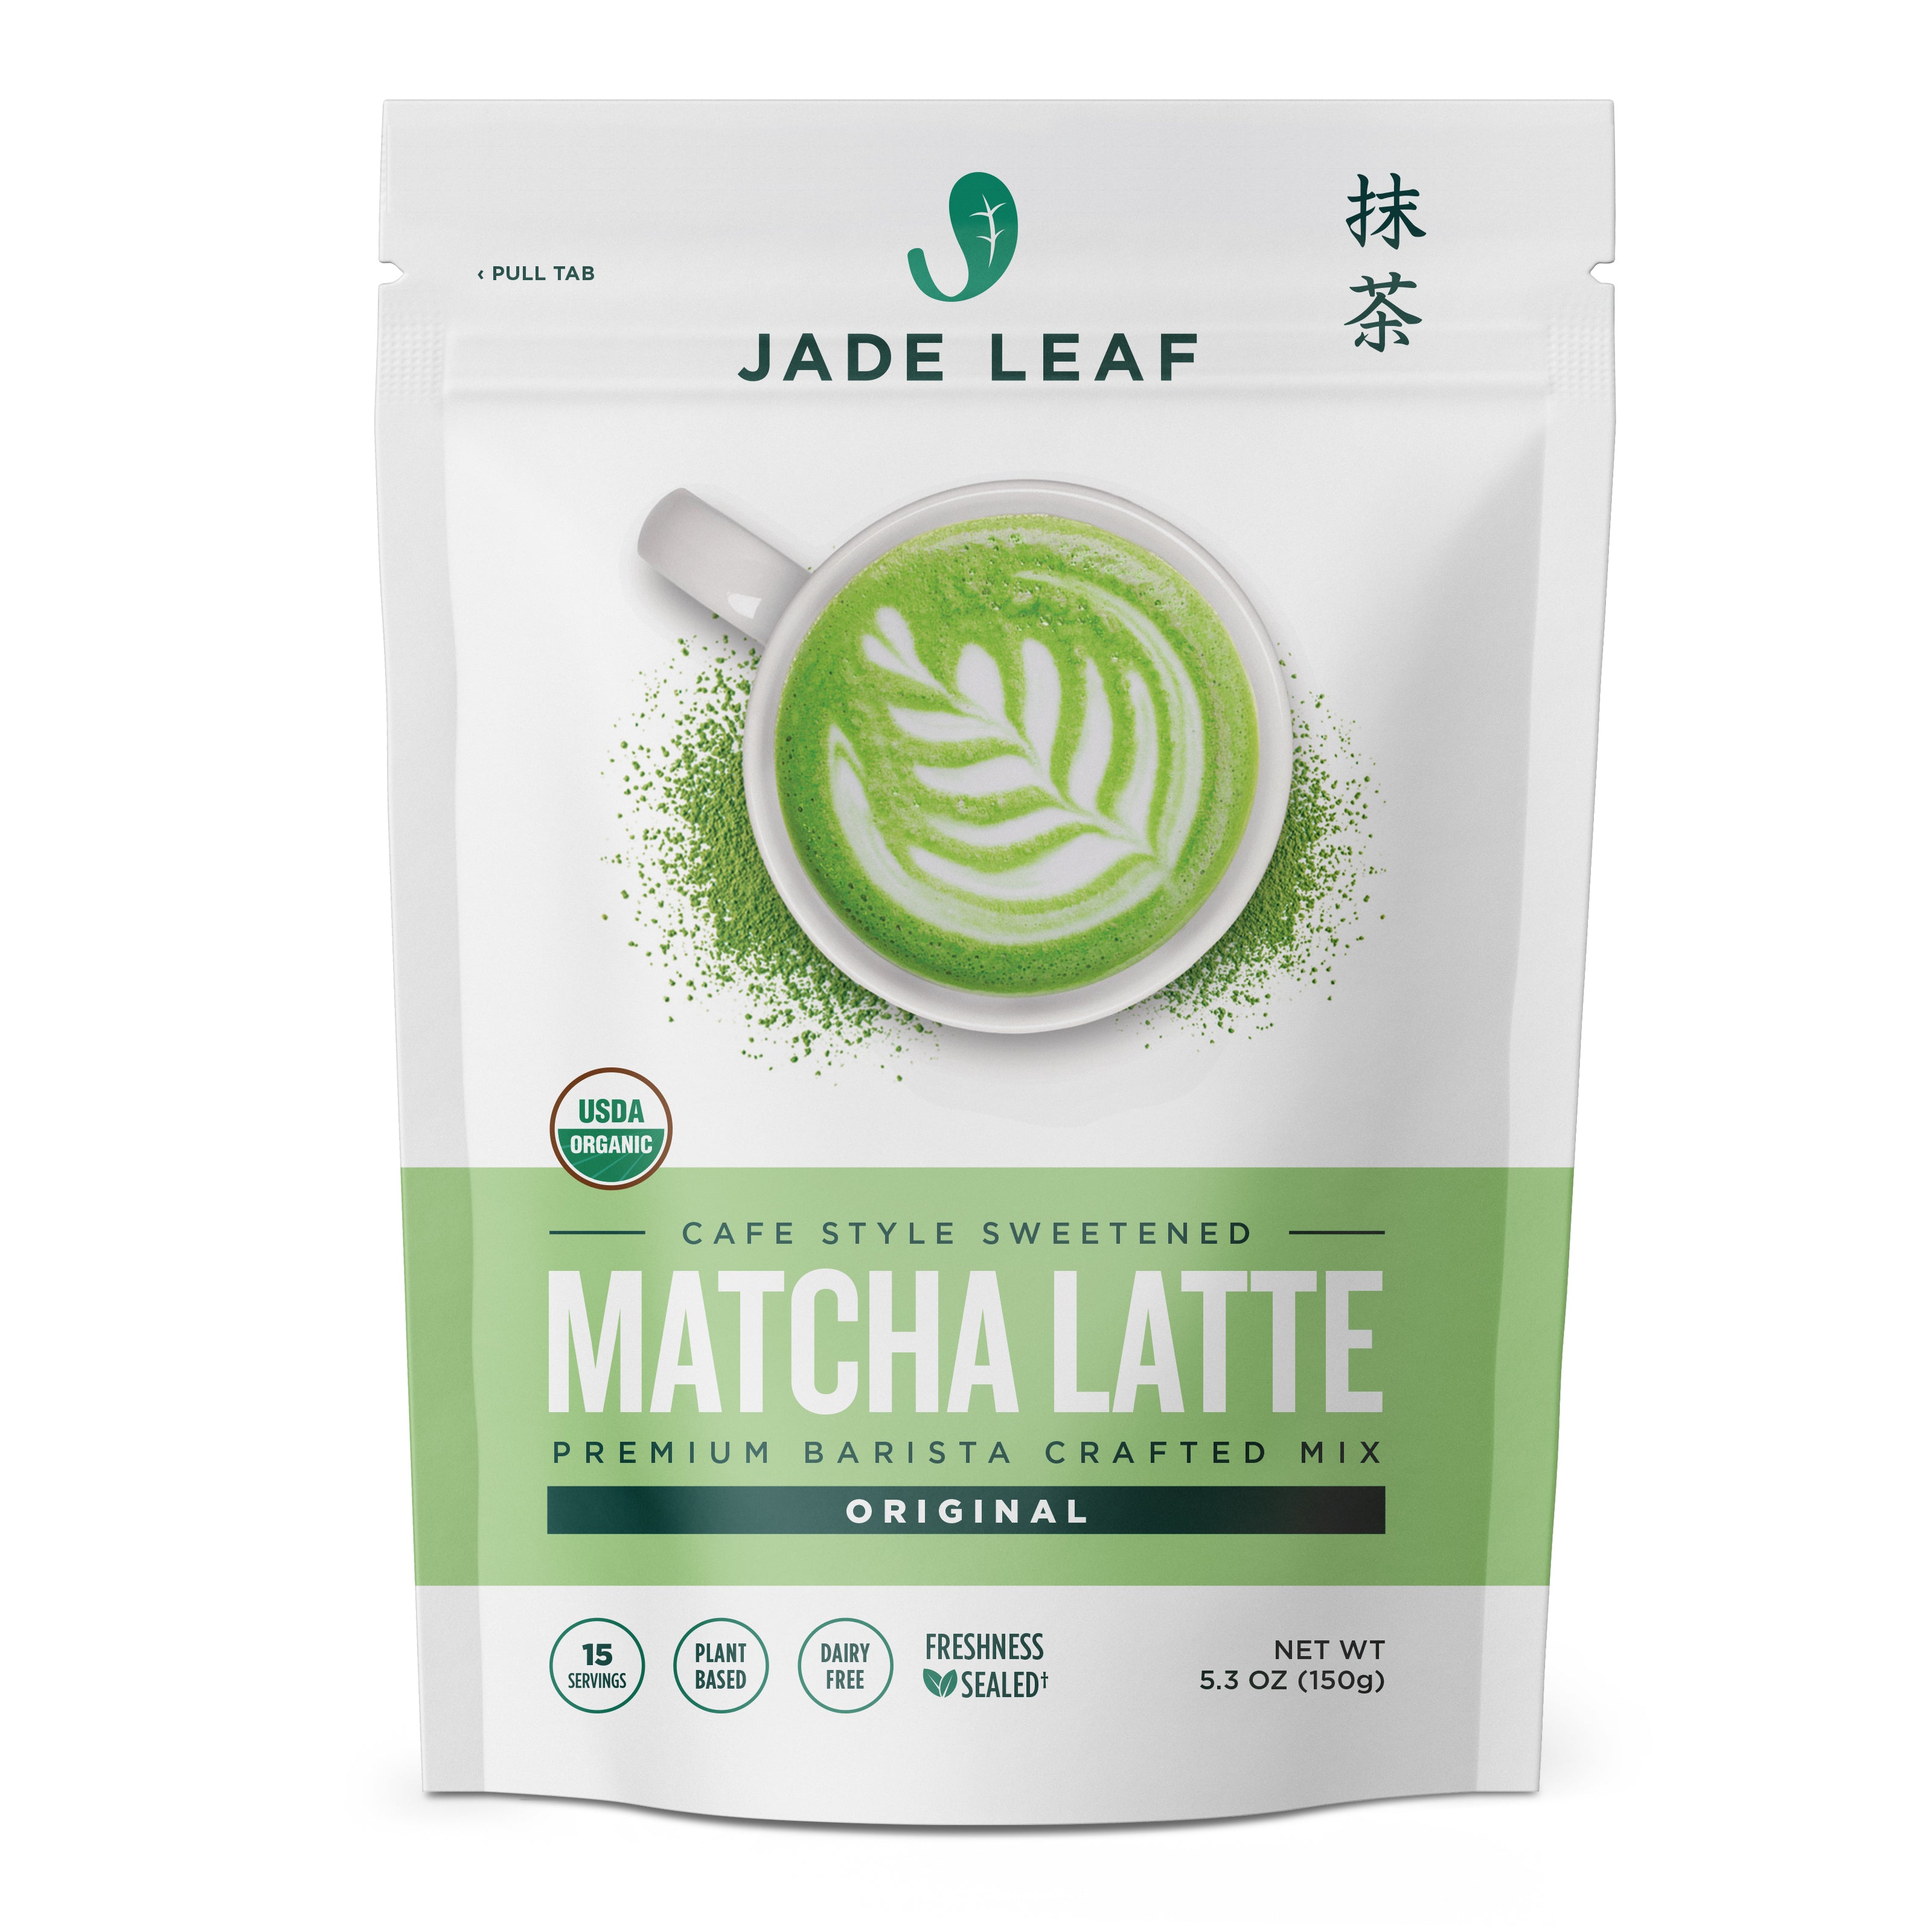 gentage side apologi Organic Cafe Style Sweetened Matcha Latte Mix - Original | Jade Leaf Matcha